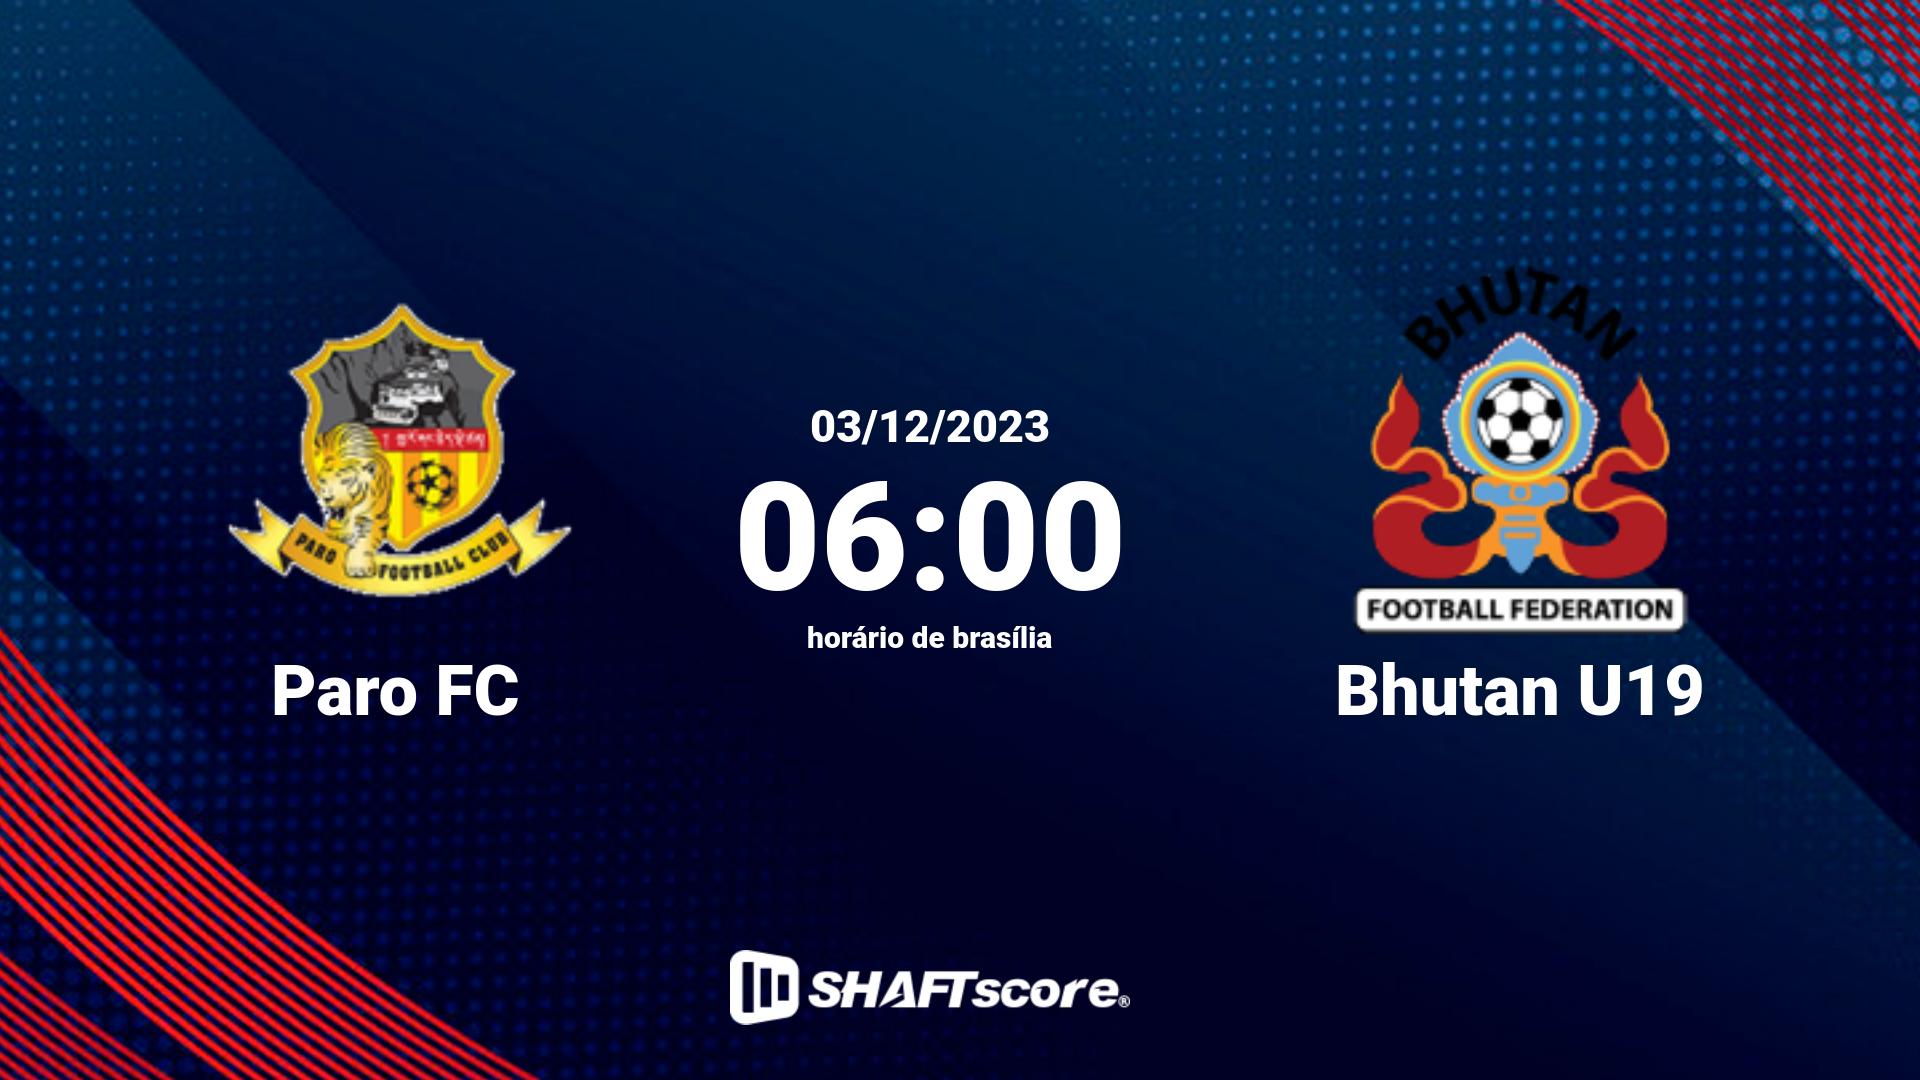 Estatísticas do jogo Paro FC vs Bhutan U19 03.12 06:00